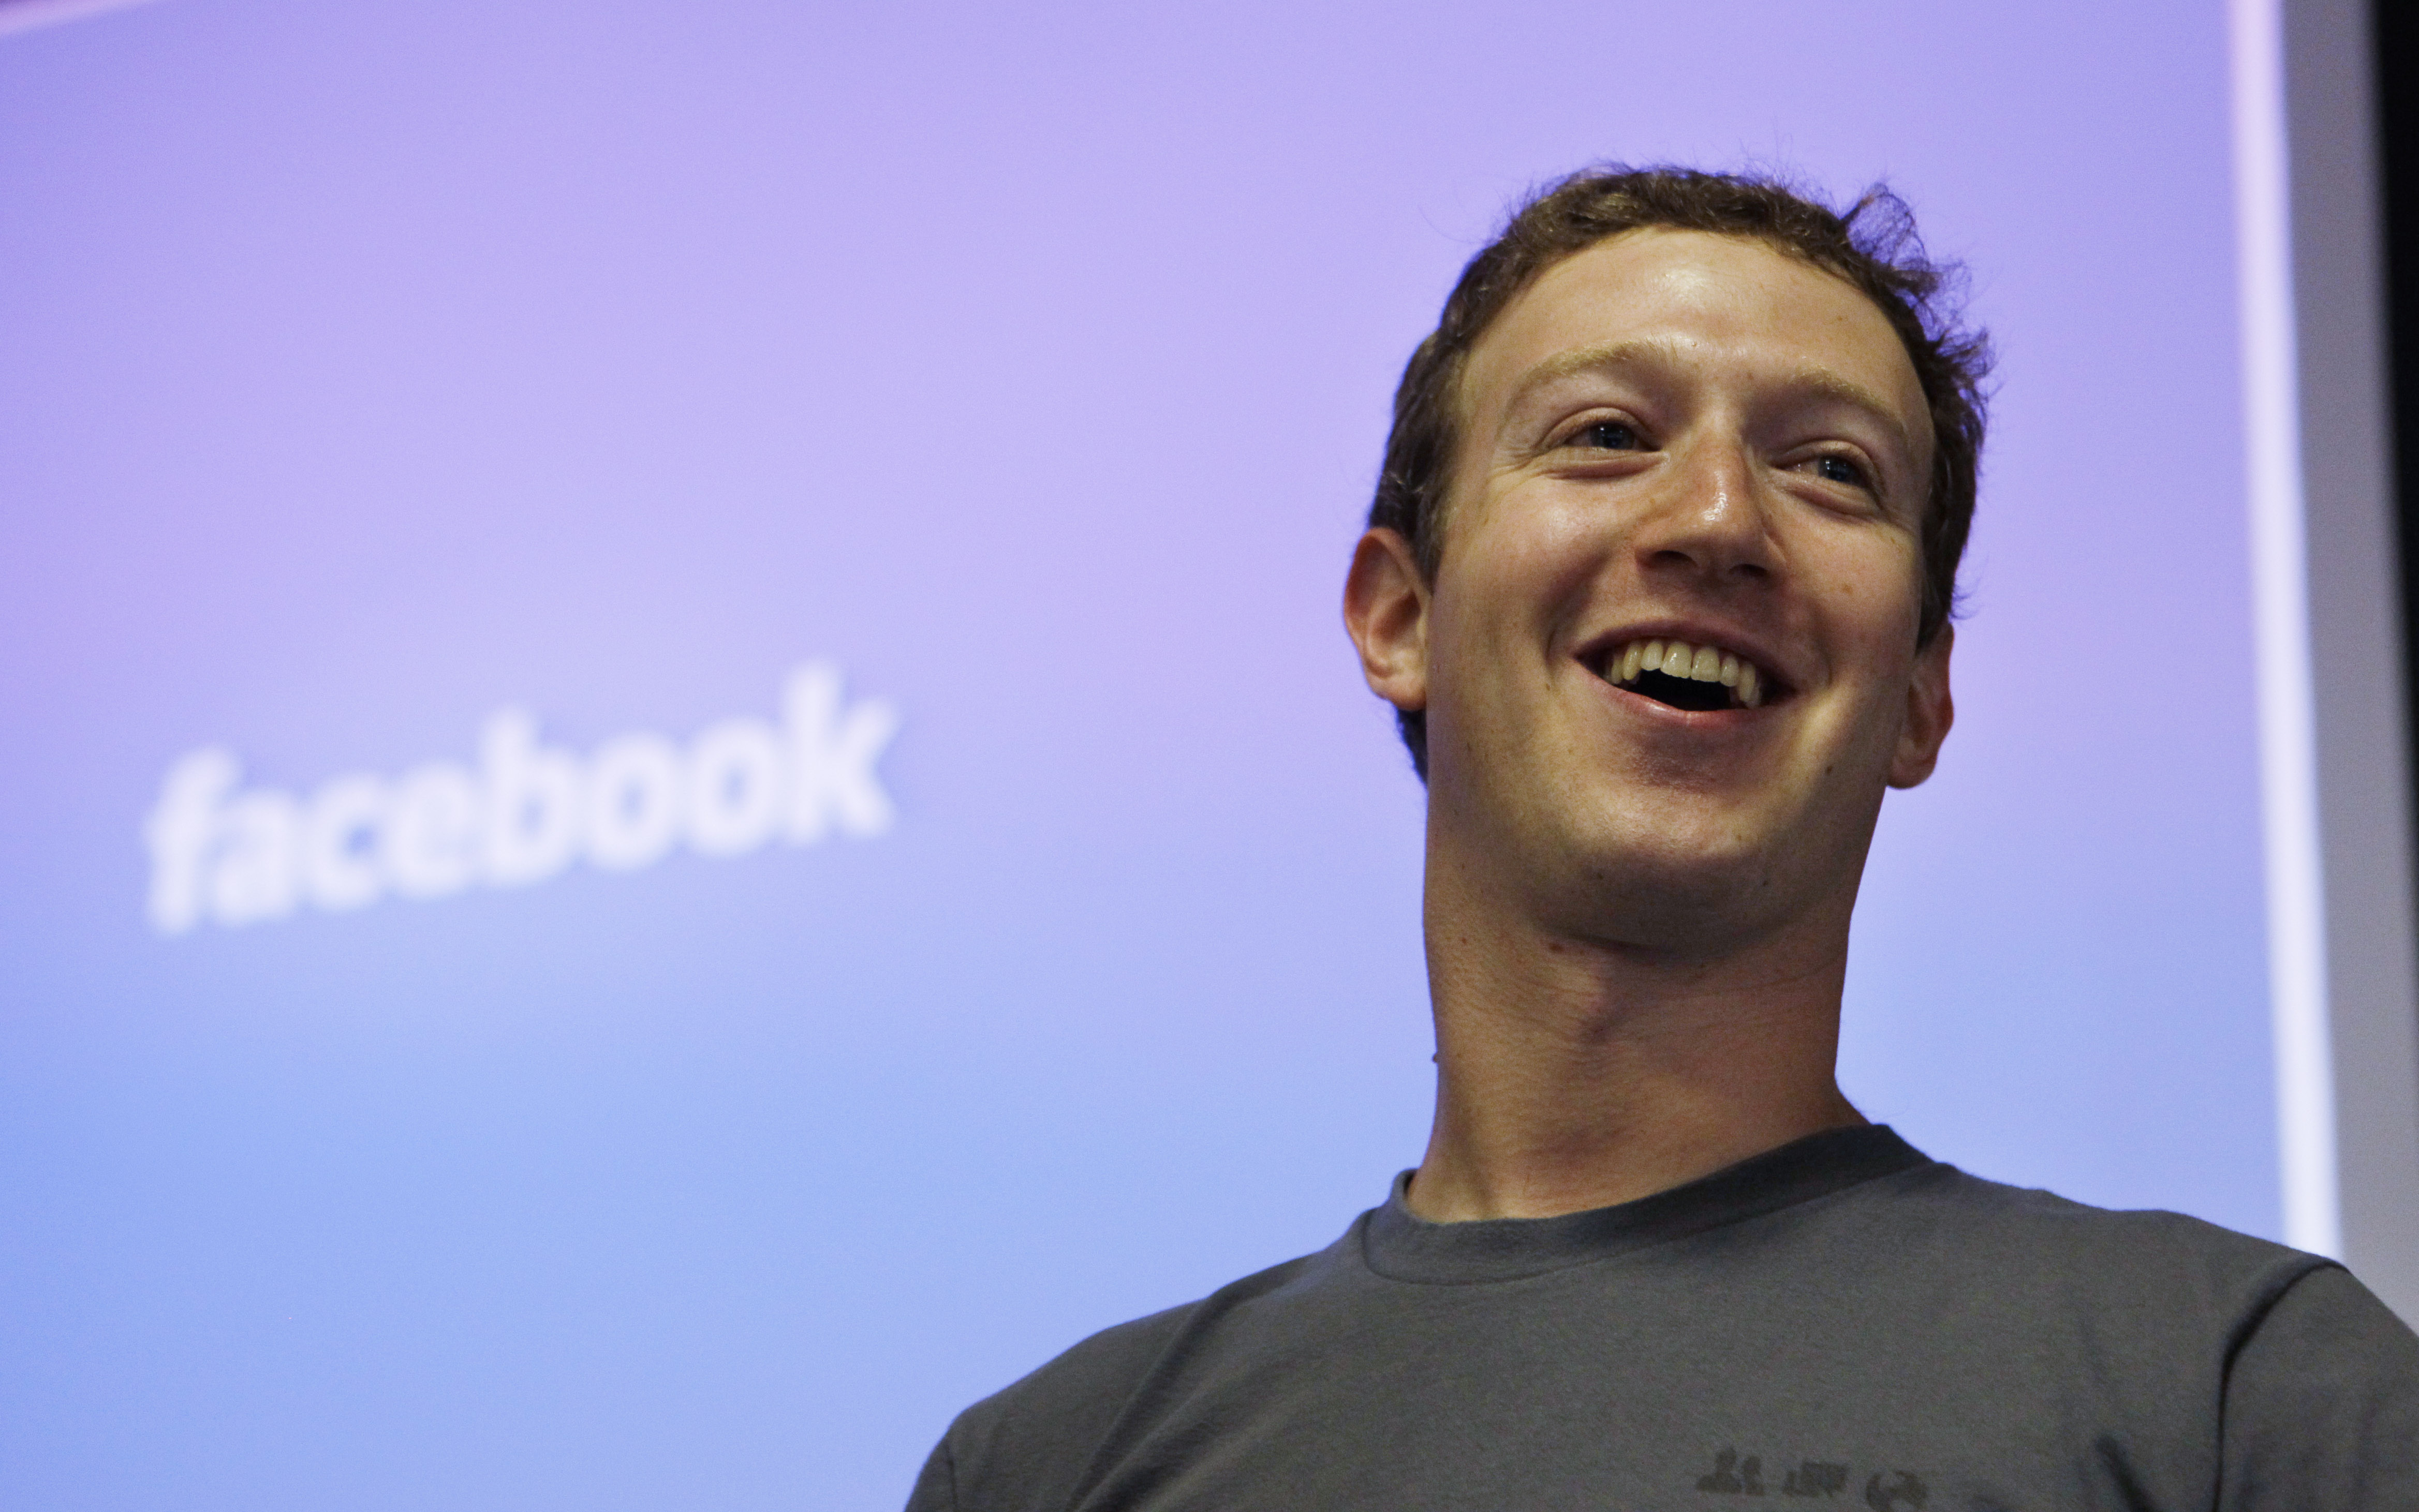 Facebookgrundaren Mark Zuckerberg skrattar hela vägen till banken.